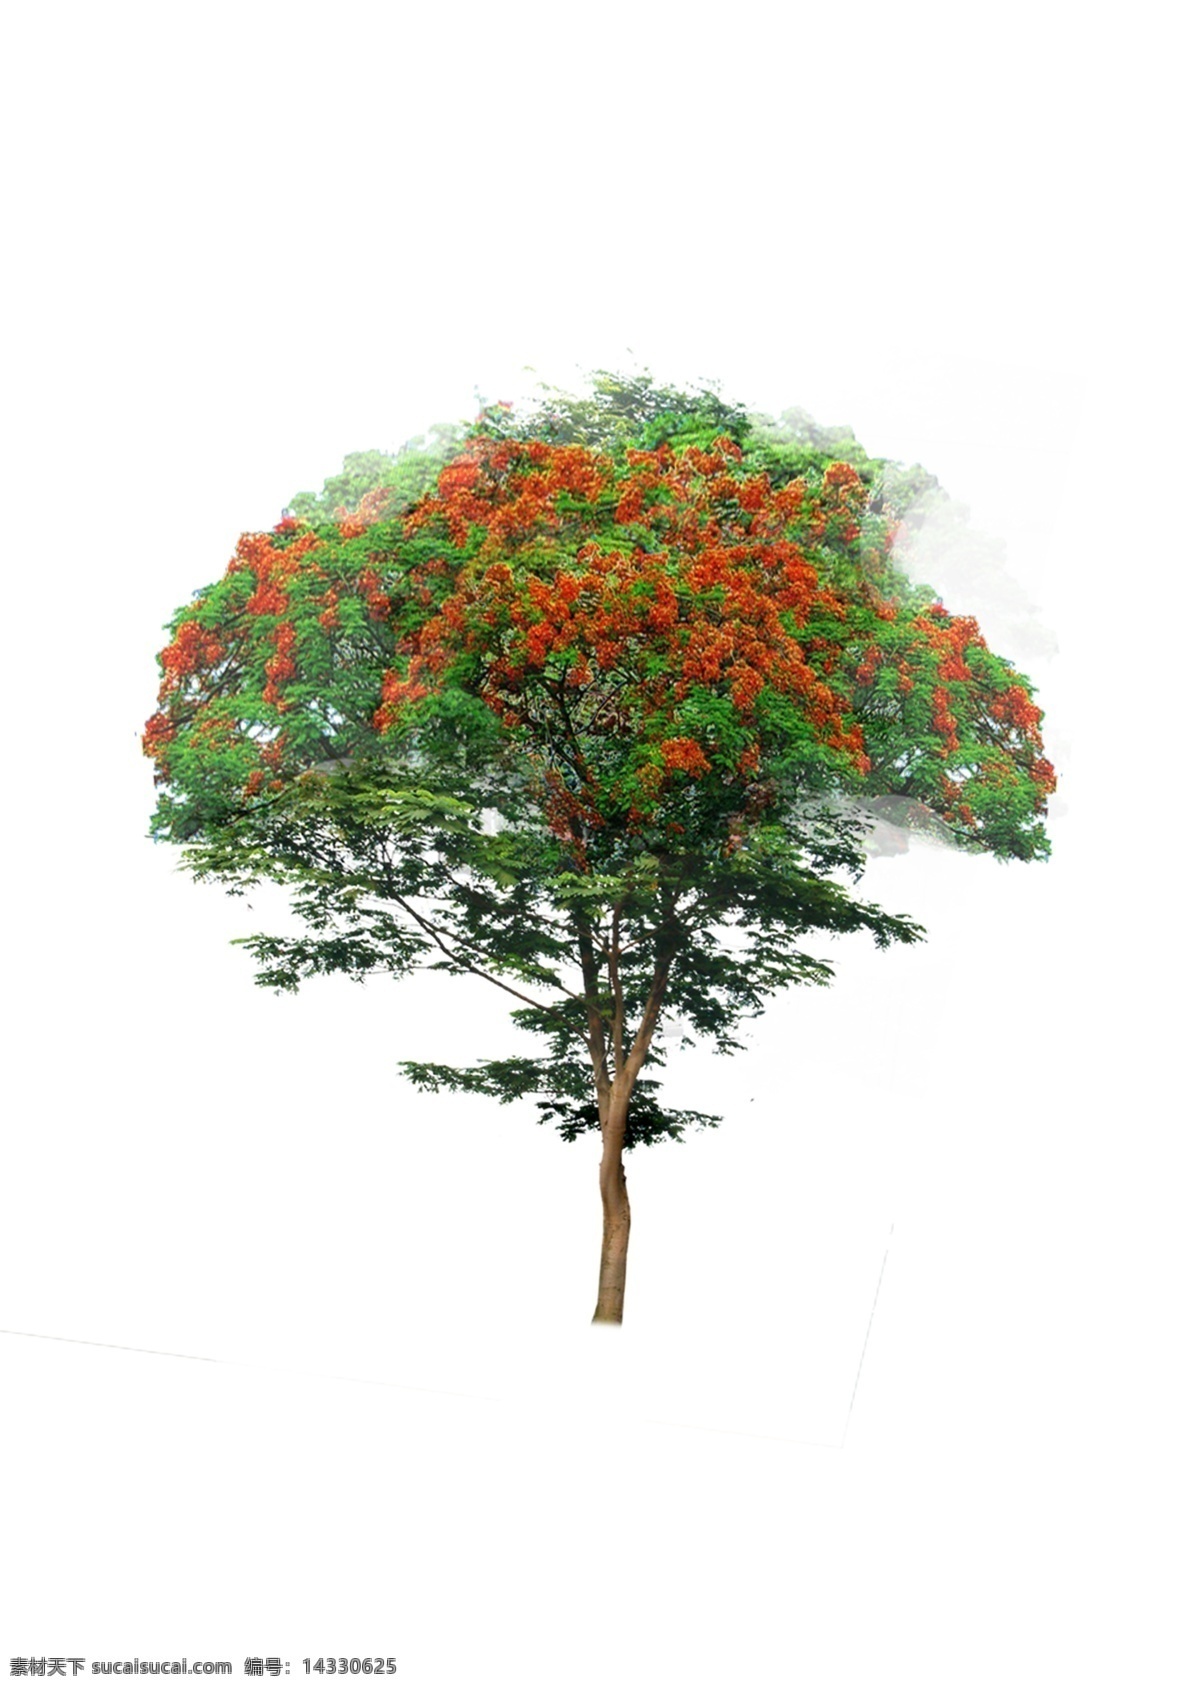 凤凰木psd 乔木 树木 植物素材 psd素材 植物 绿化素材 环境设计 景观设计